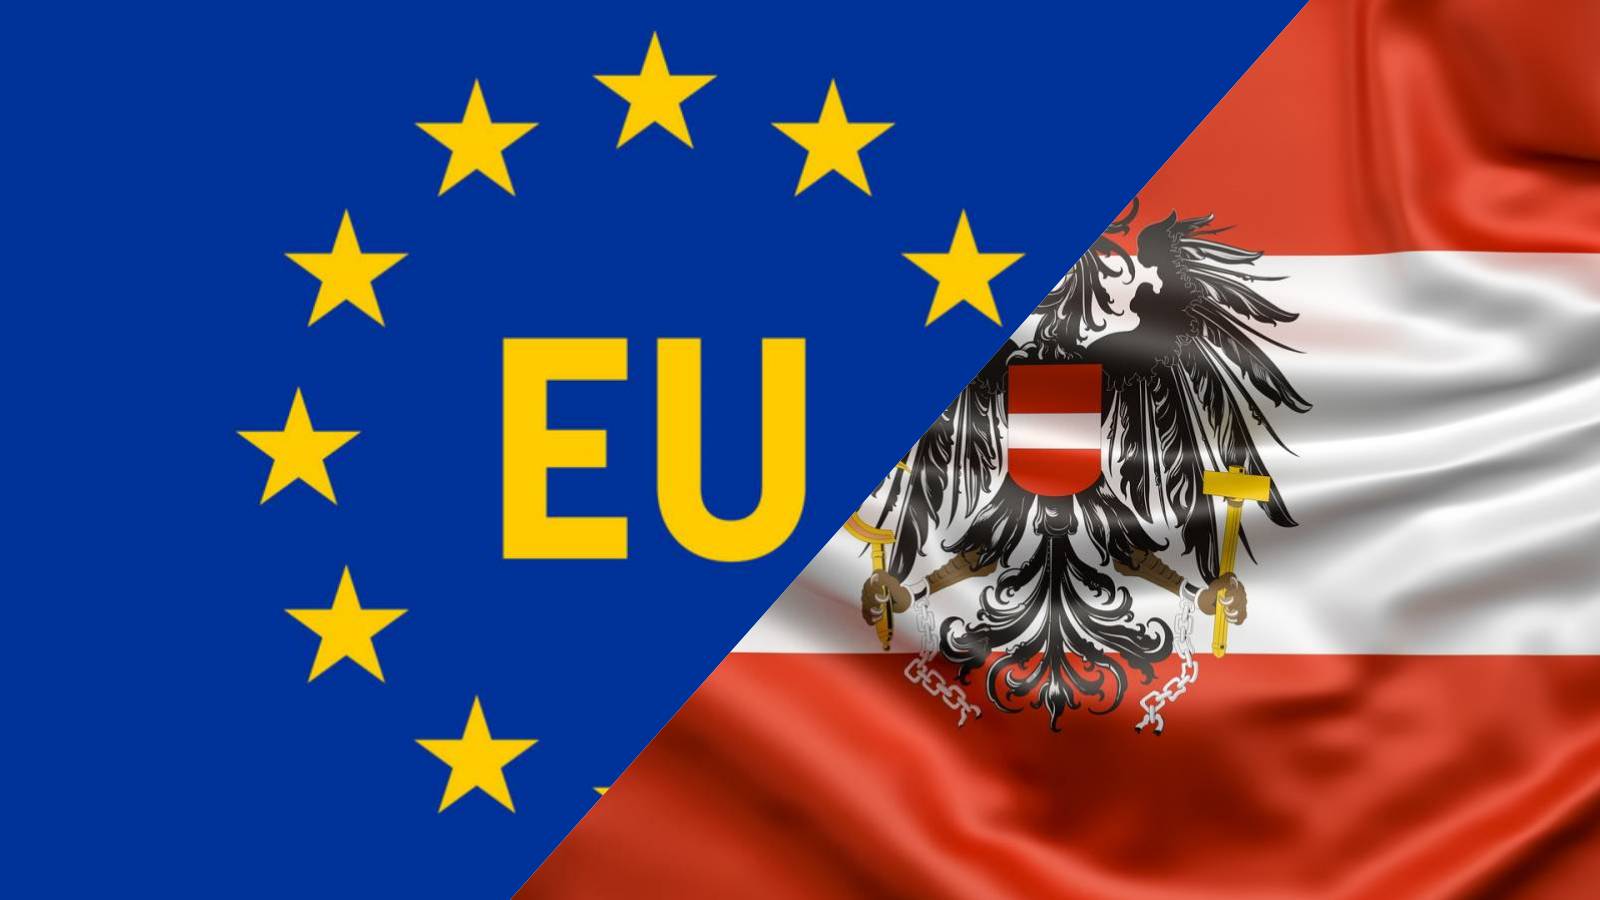 Österreich hat keine Probleme Rumäniens Beitritt zu Schengen Die wichtigste Ankündigung, die Europa gemacht hat